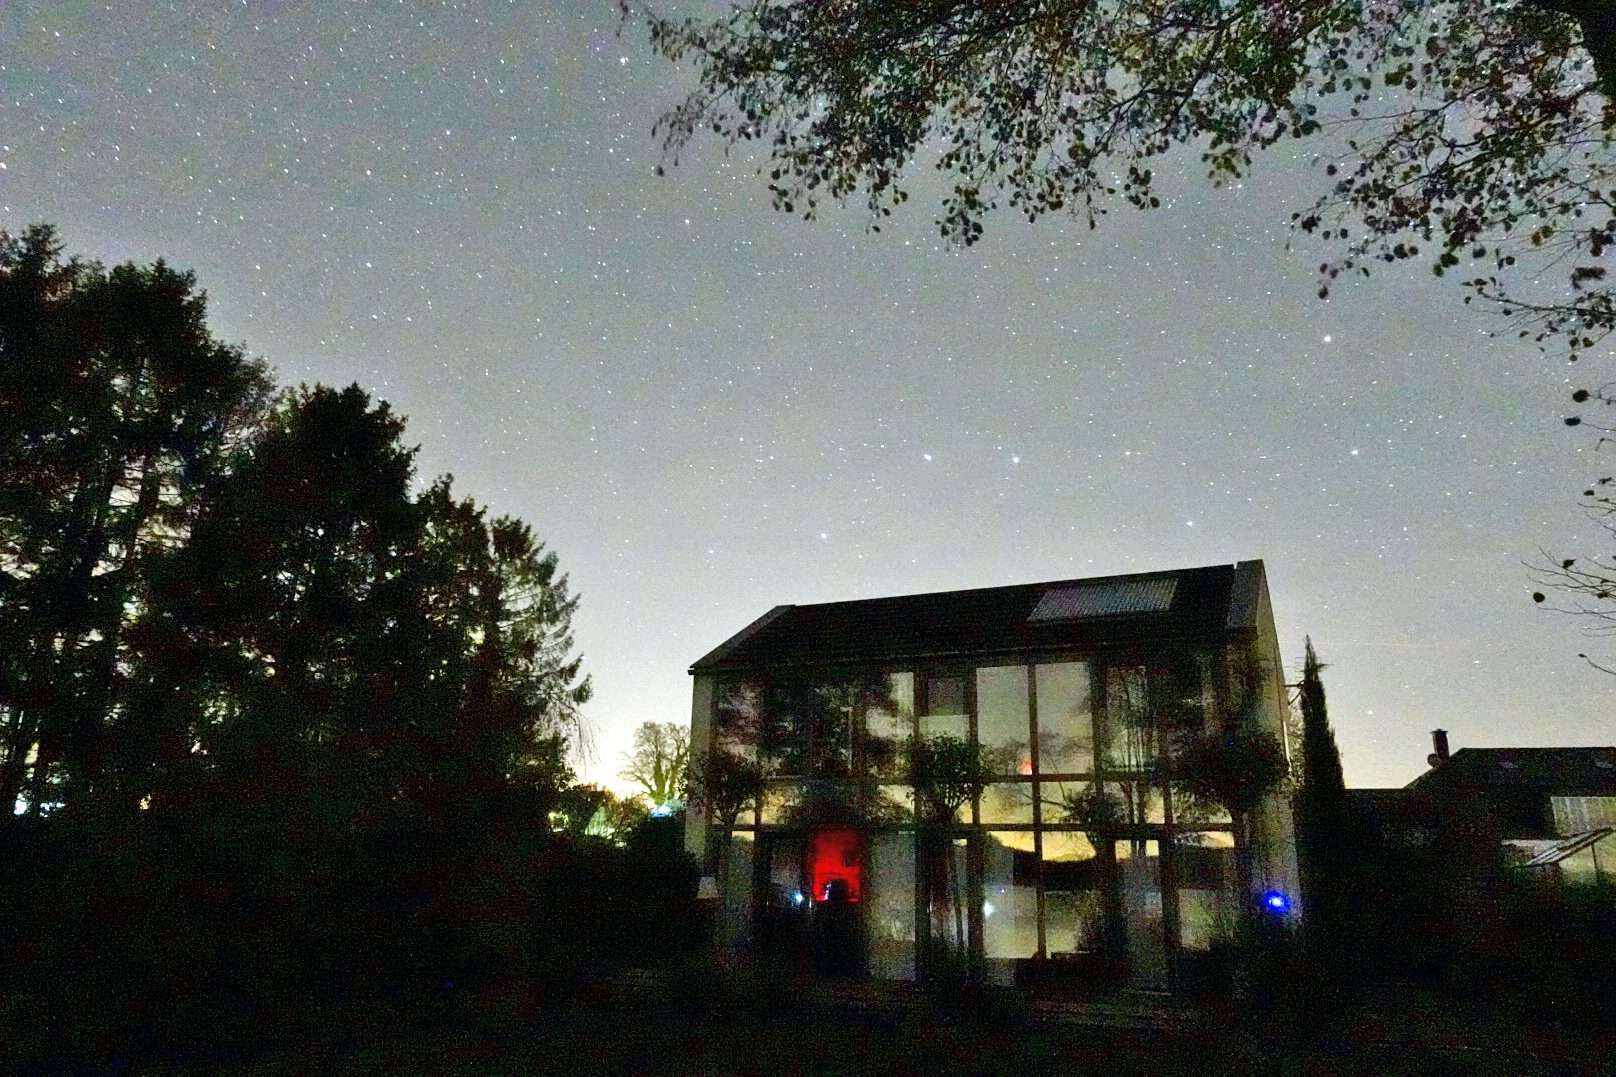 ferienhaus-aussenansicht-mit-noerdlichem-sternenhimmel-und-sternenbild